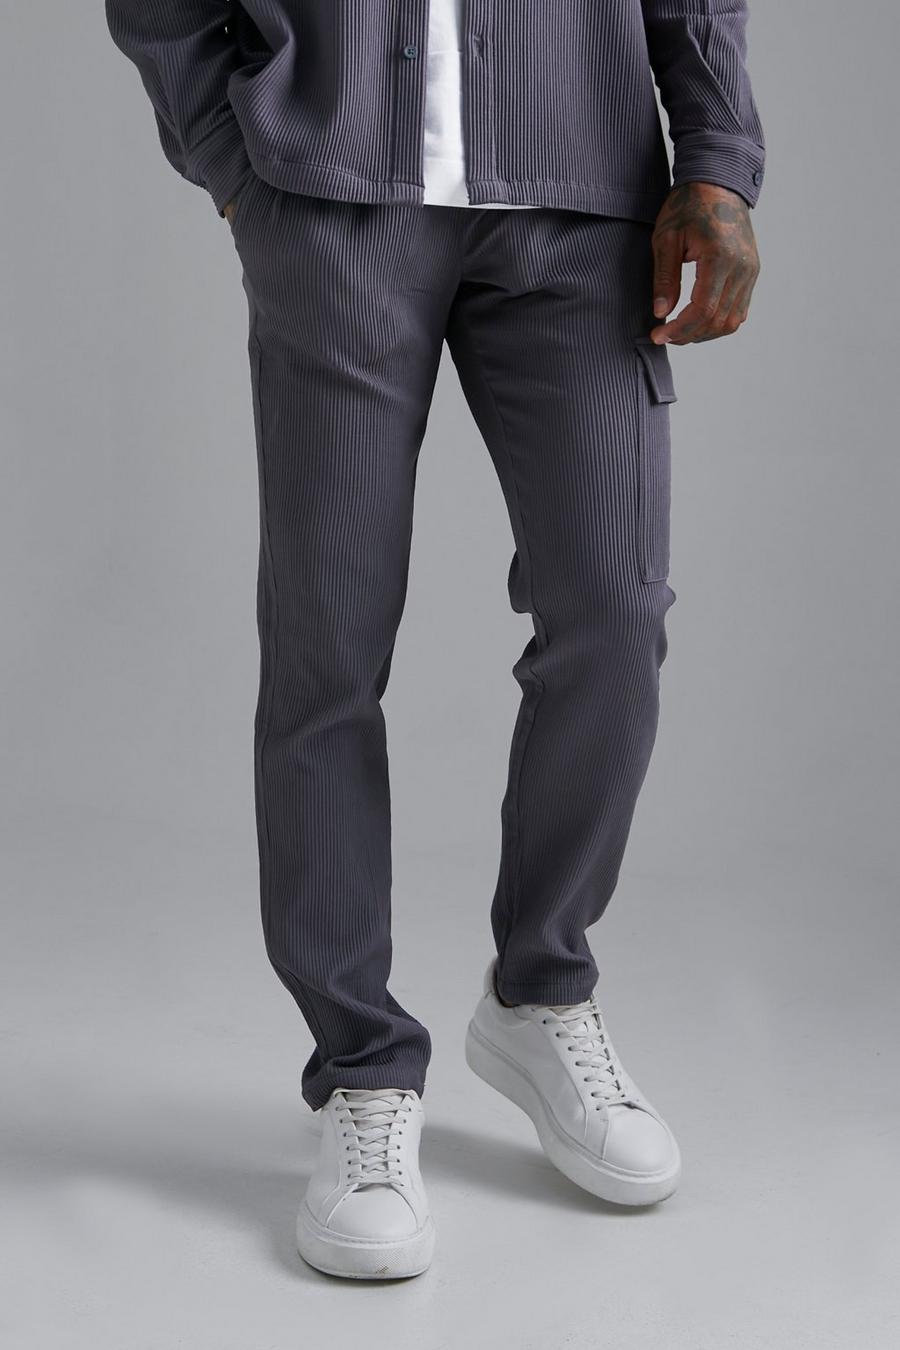 Pantalón pesquero plisado ajustado, Dark grey